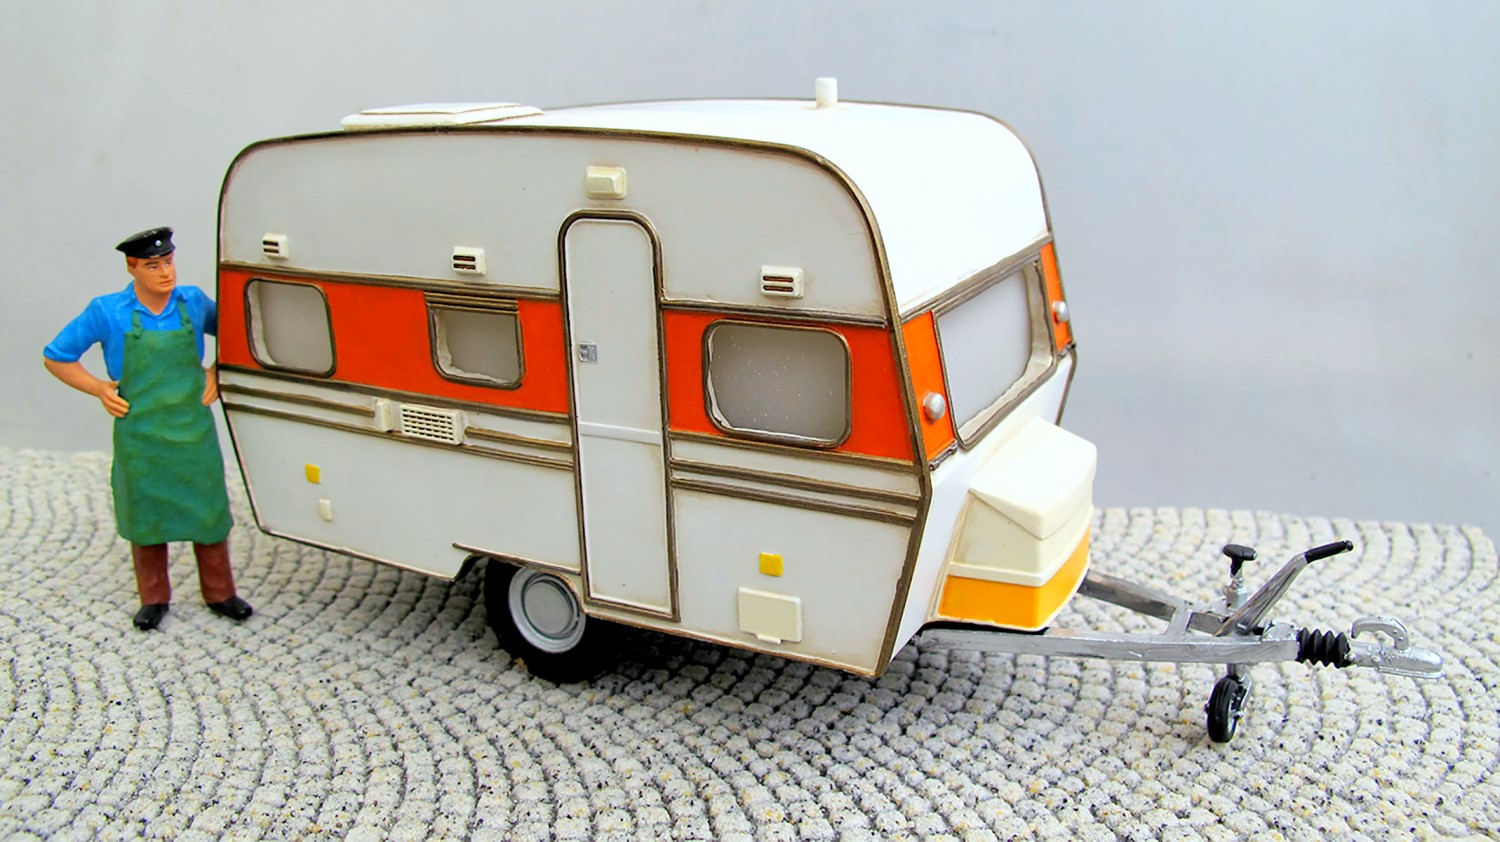 Das Standmodell ist nach dem Vorbild eines Wohnwagens aus den 60ziger Jahren nachempfunden und passt herrlich in die Dampflokzeit. Das aus High-Grad-Resin gefertigte Modell ist fein detailliert und leicht gealtert, passend zu einer Campingszene.